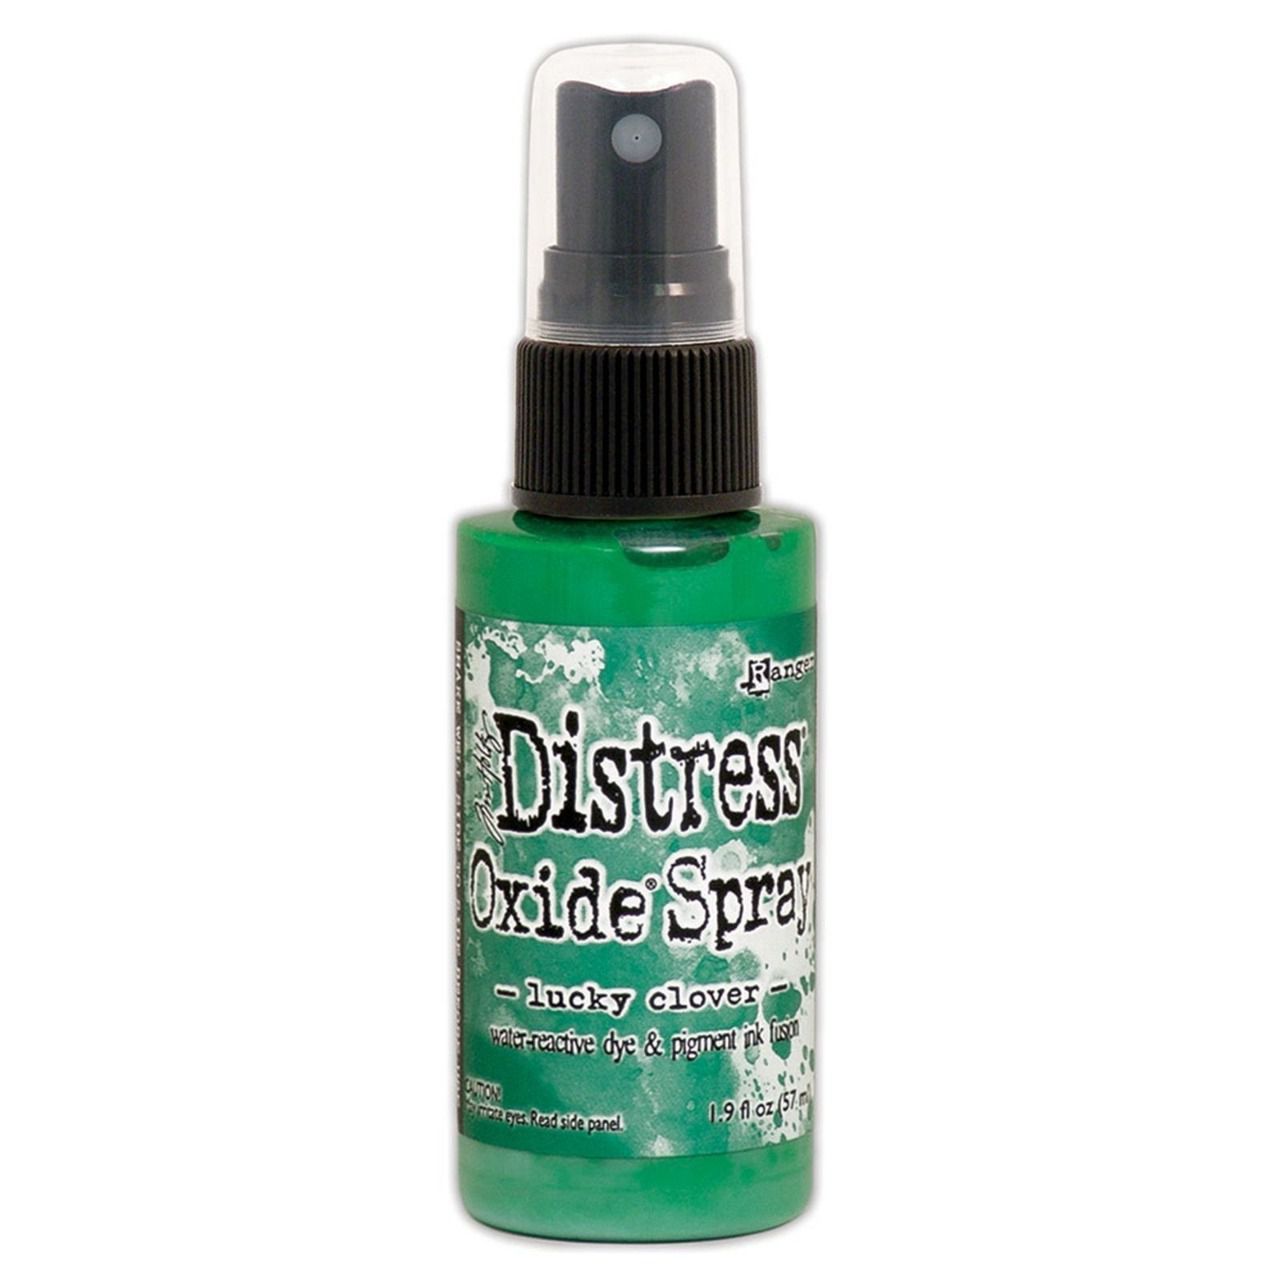 Distress spray oxide : Lucky clover